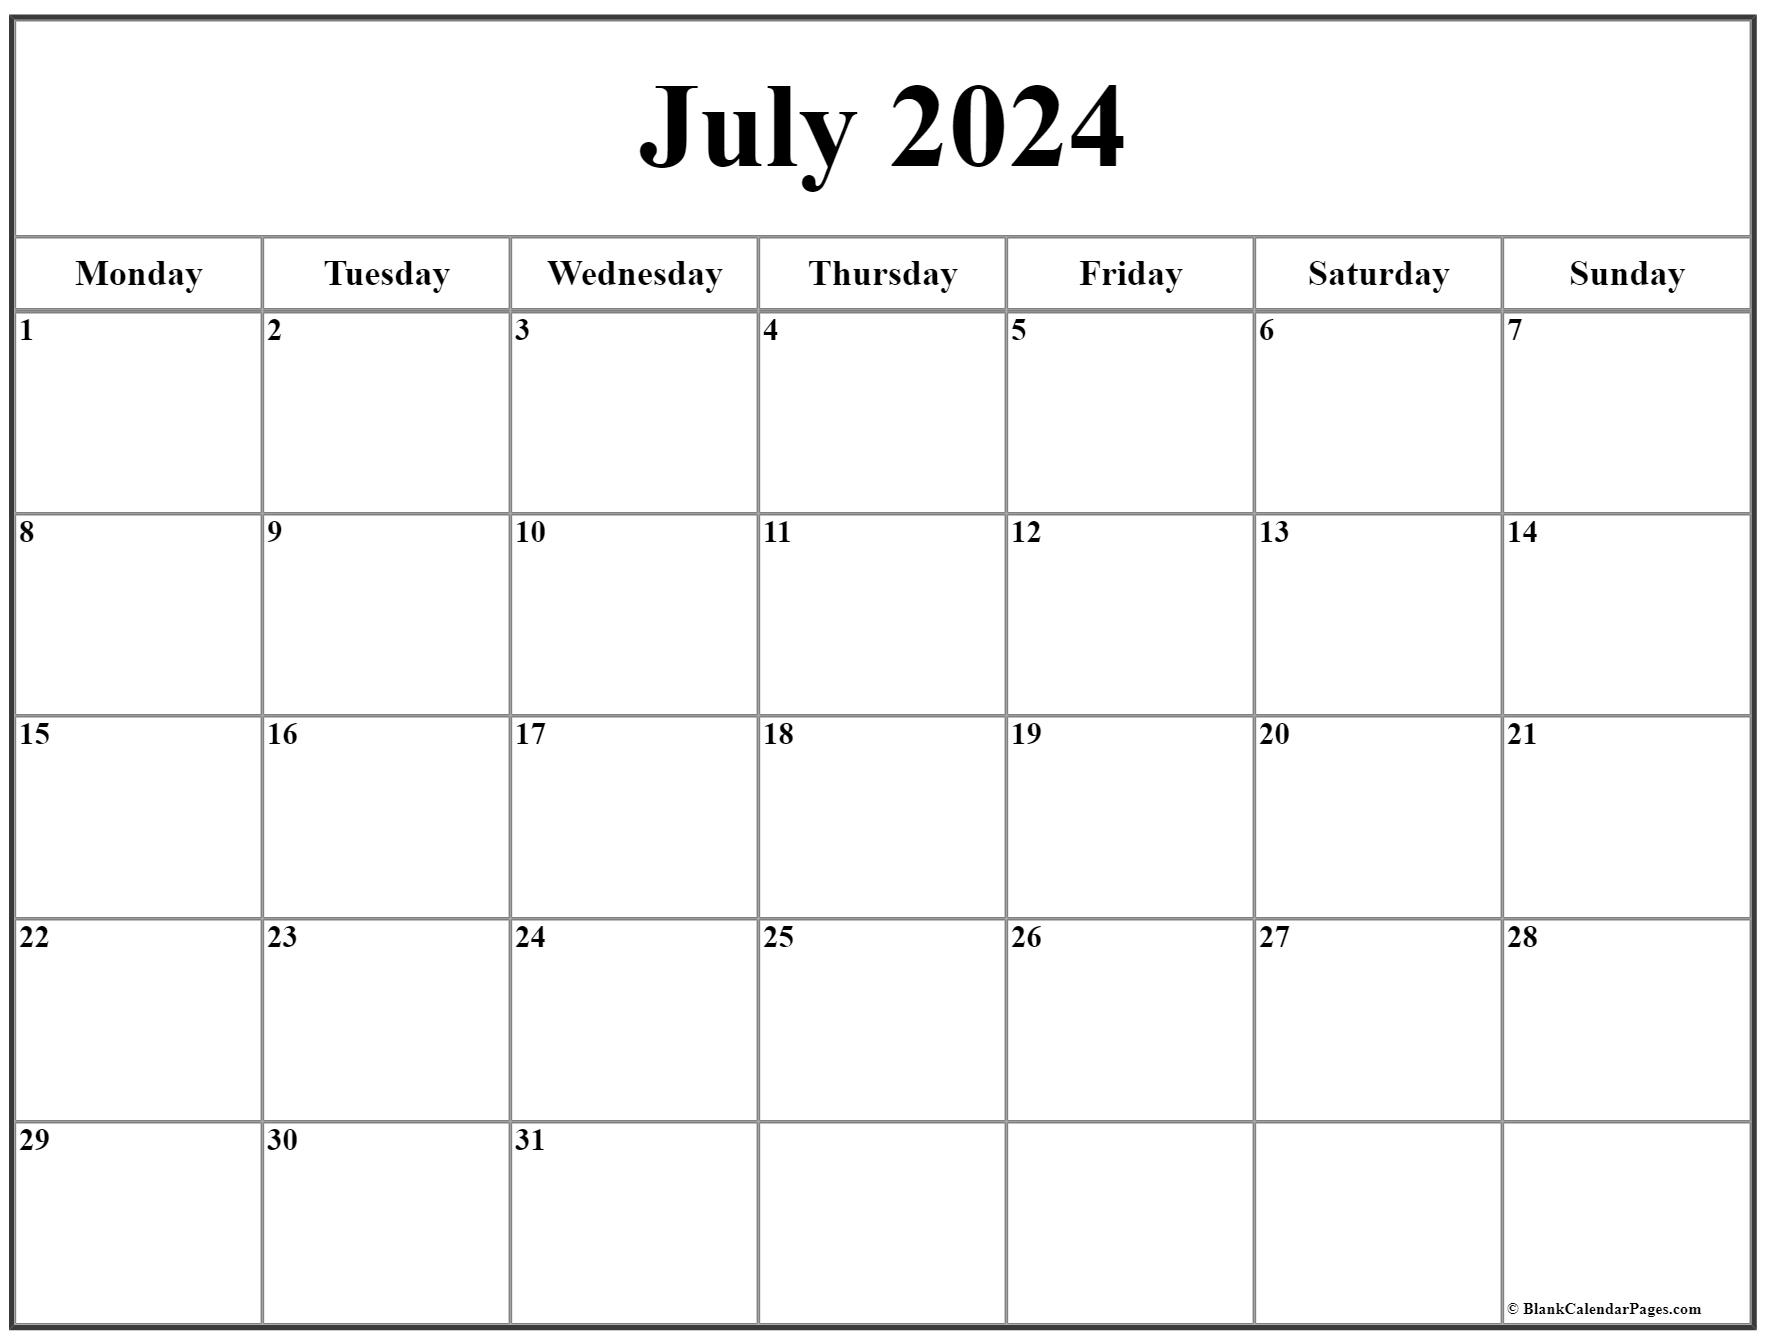 Даты календаря на 2023 год